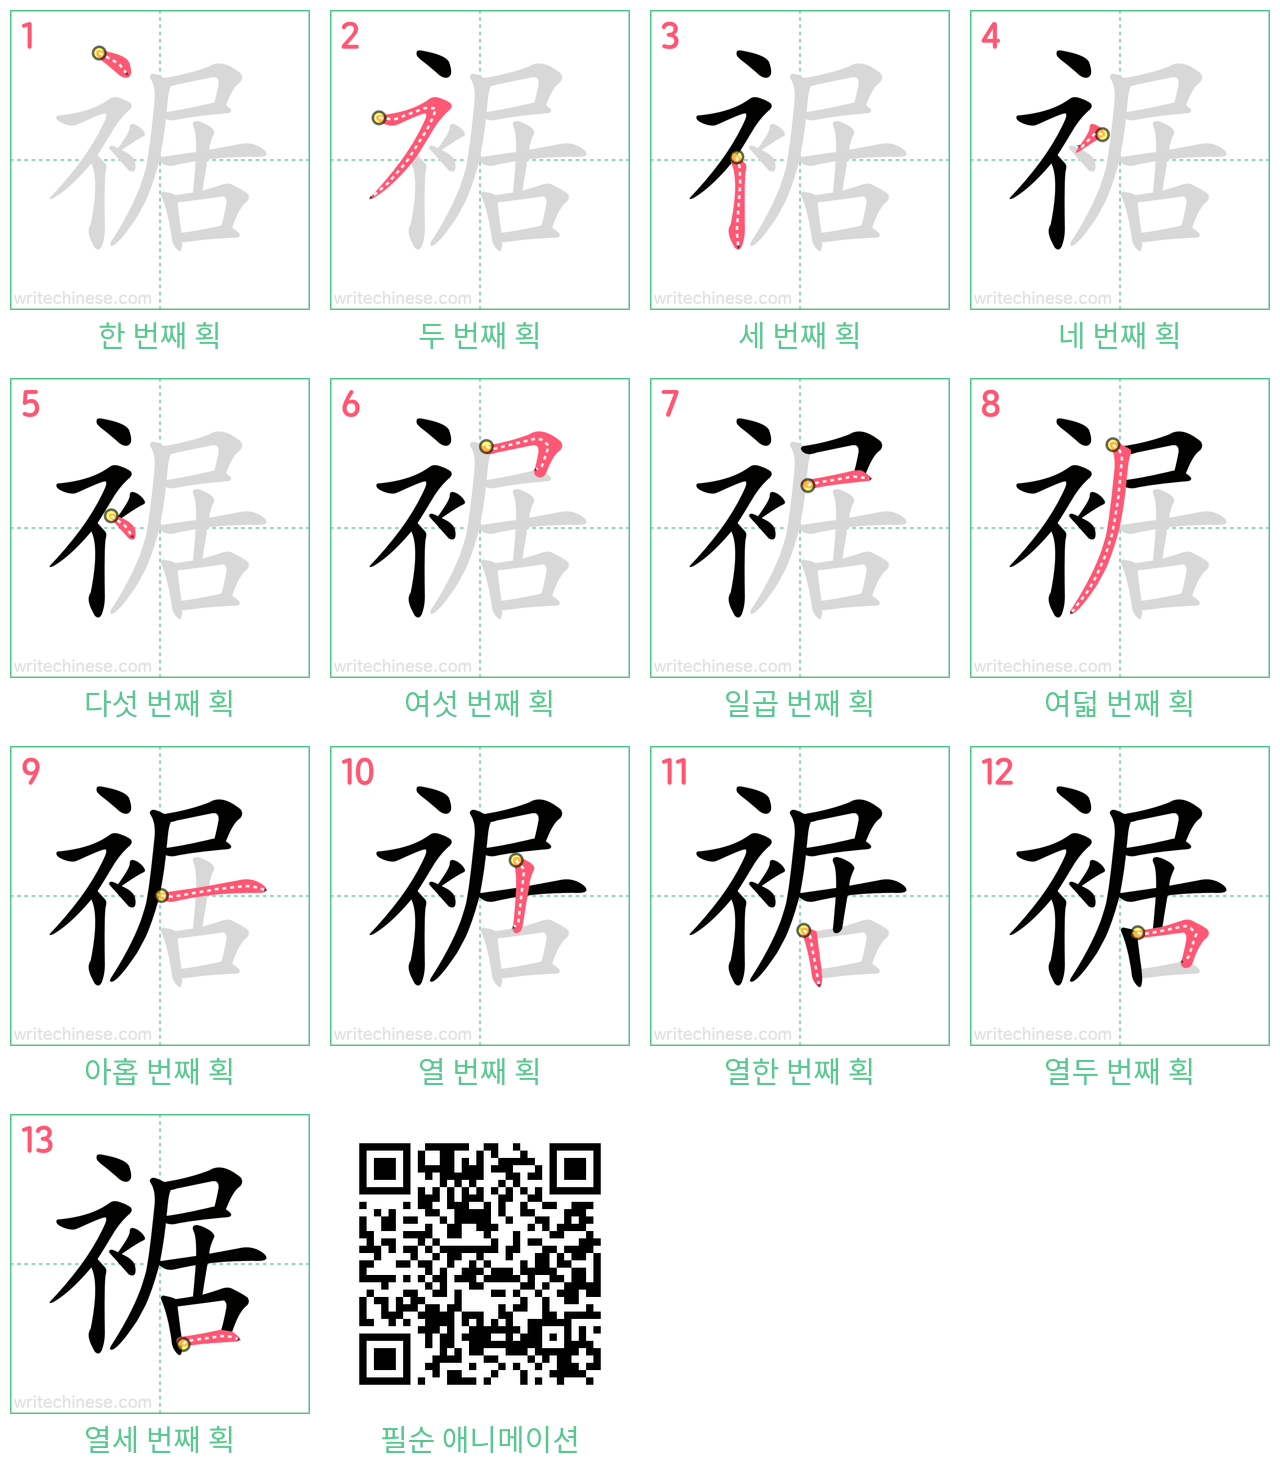 裾 step-by-step stroke order diagrams